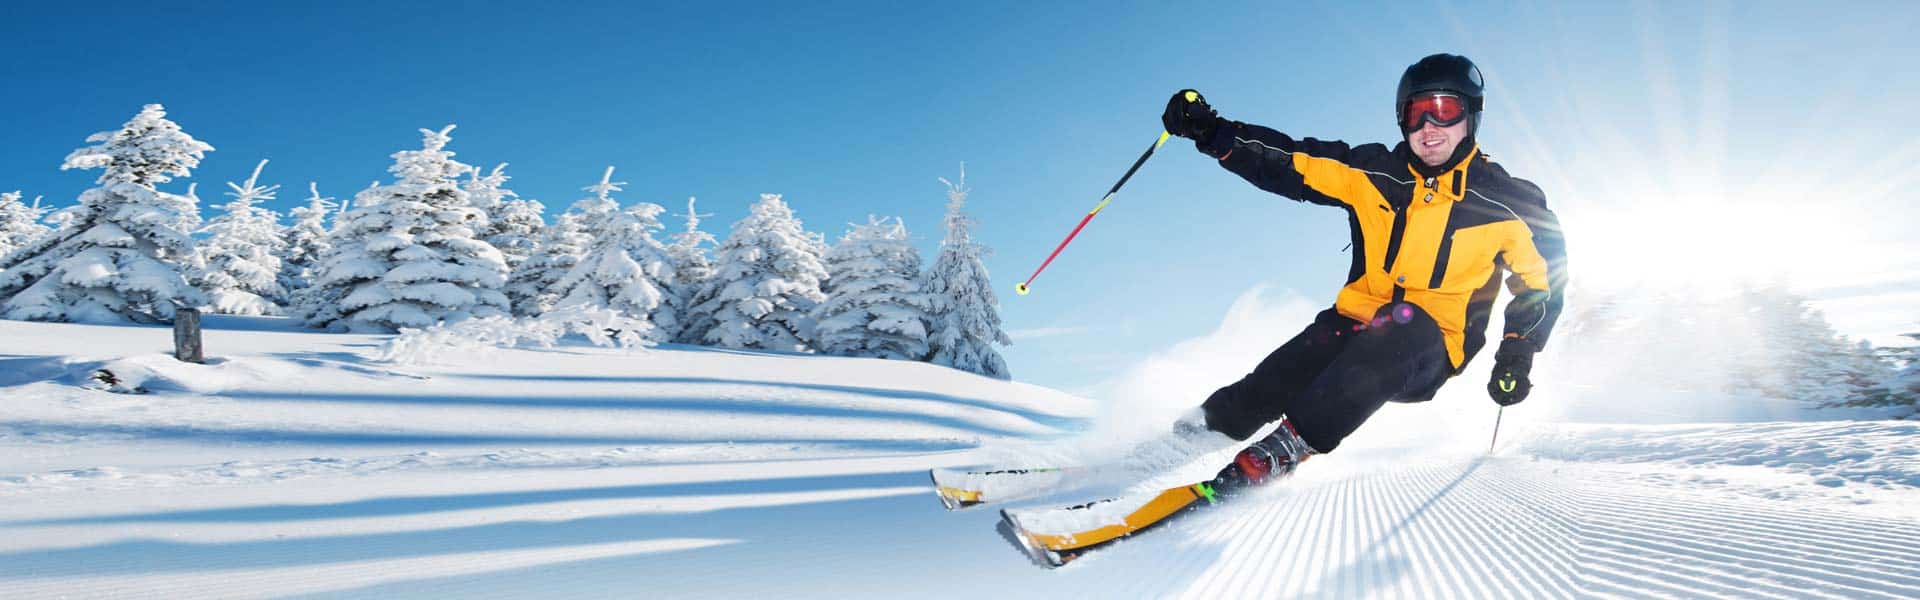 Ski kaufen – worauf muss ich bei der Skiausrüstung achten?